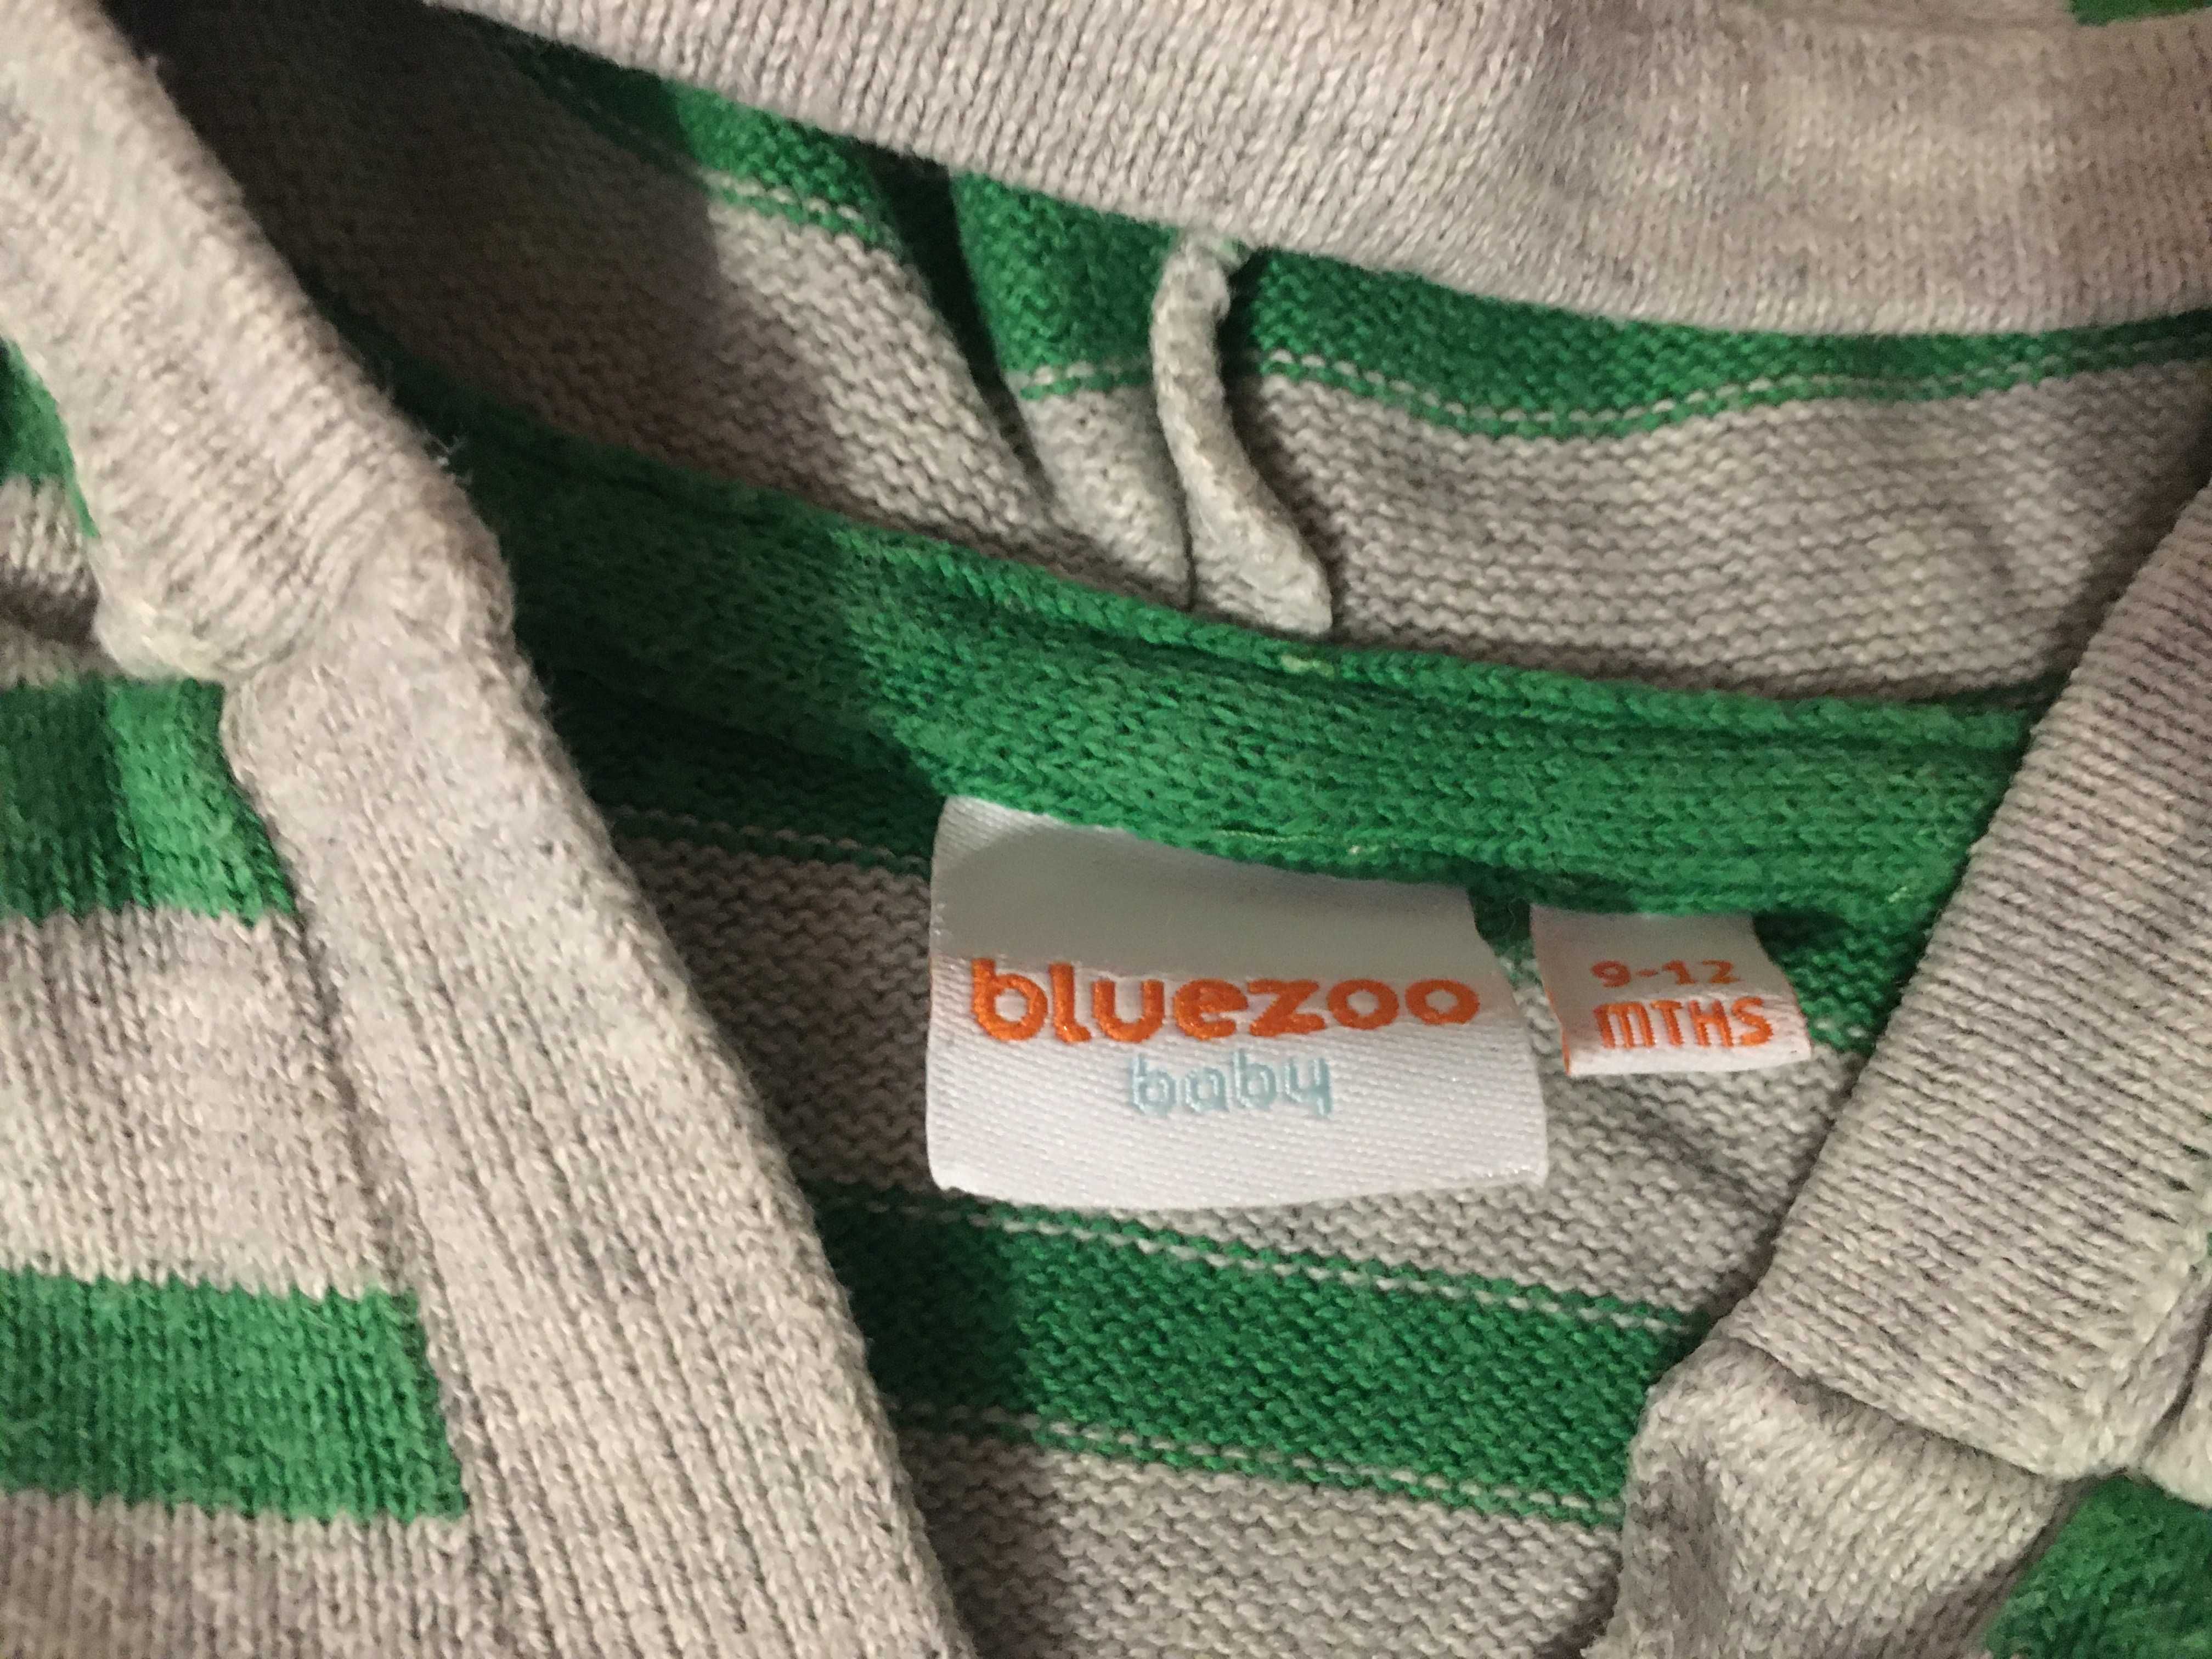 Sweterek dla chłopca szary w zielone paski r 74 9-12 mcy